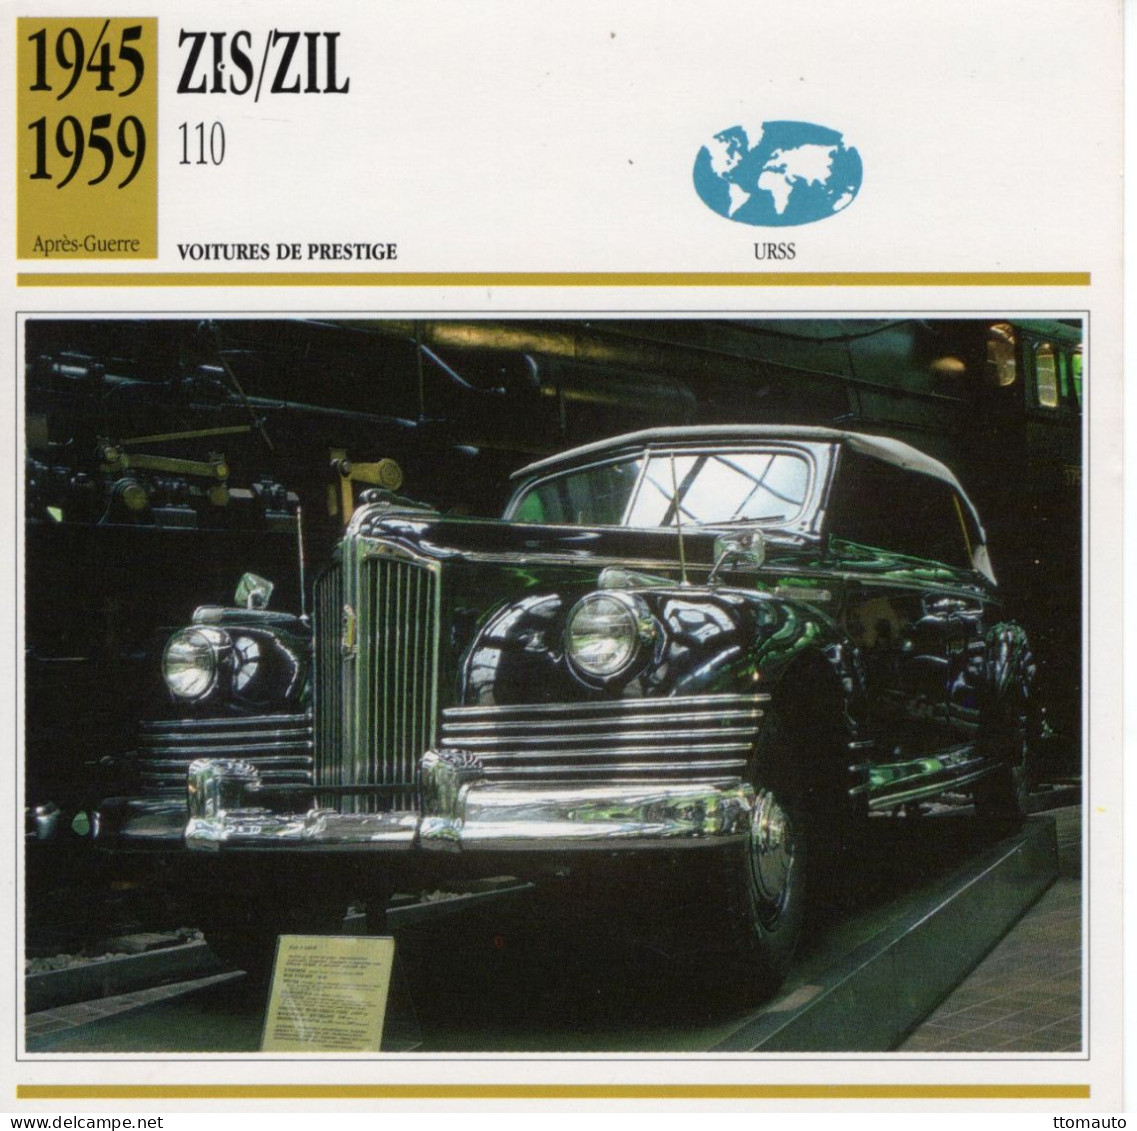 Zis/Zil 110   -  1952  - Voiture De Prestige -  Fiche Technique Automobile (URSS) - Autos